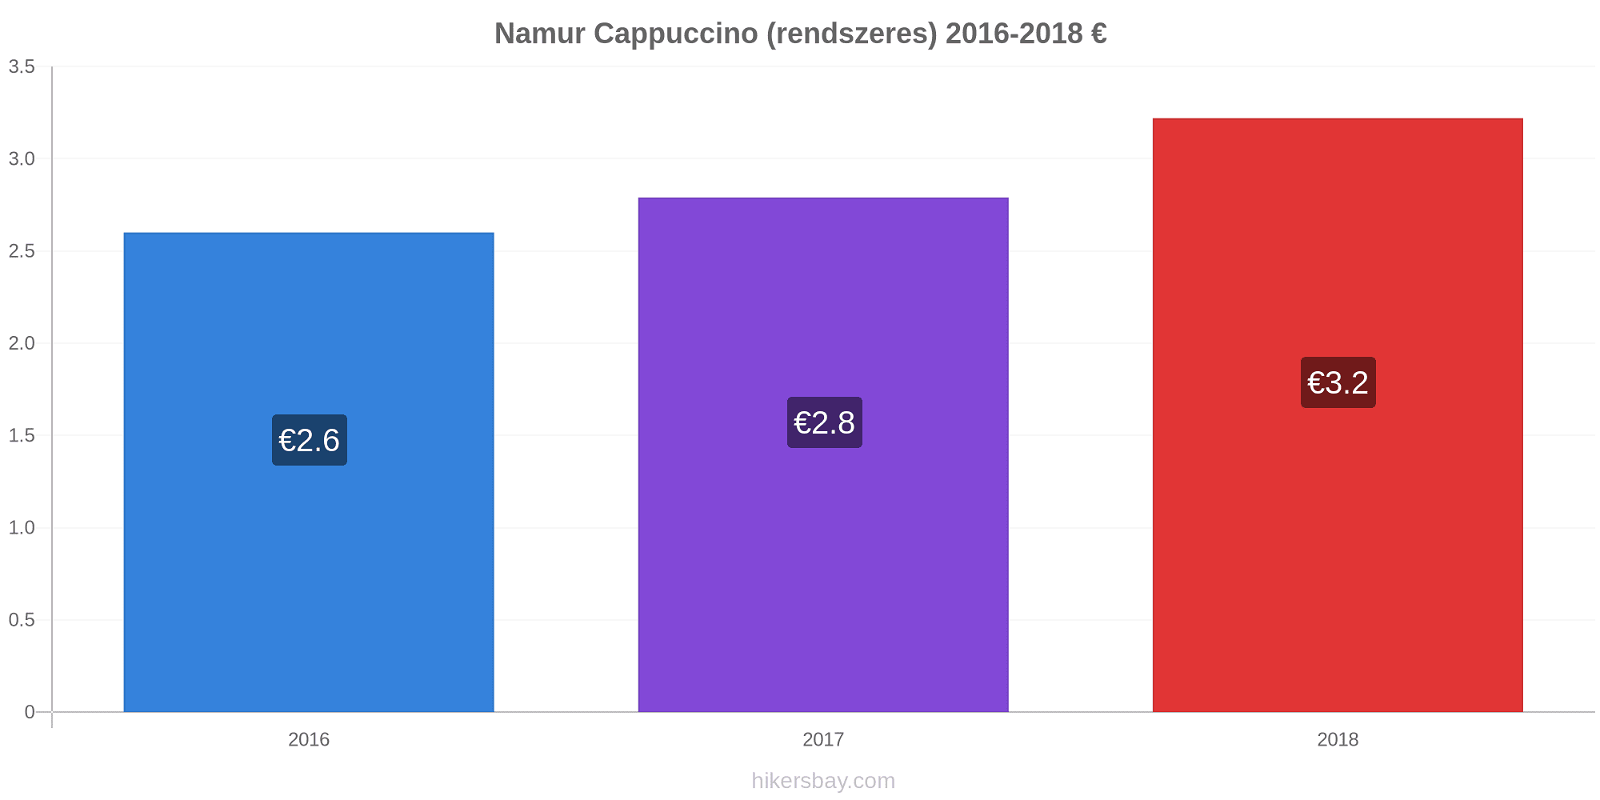 Namur árváltozások Cappuccino (rendszeres) hikersbay.com